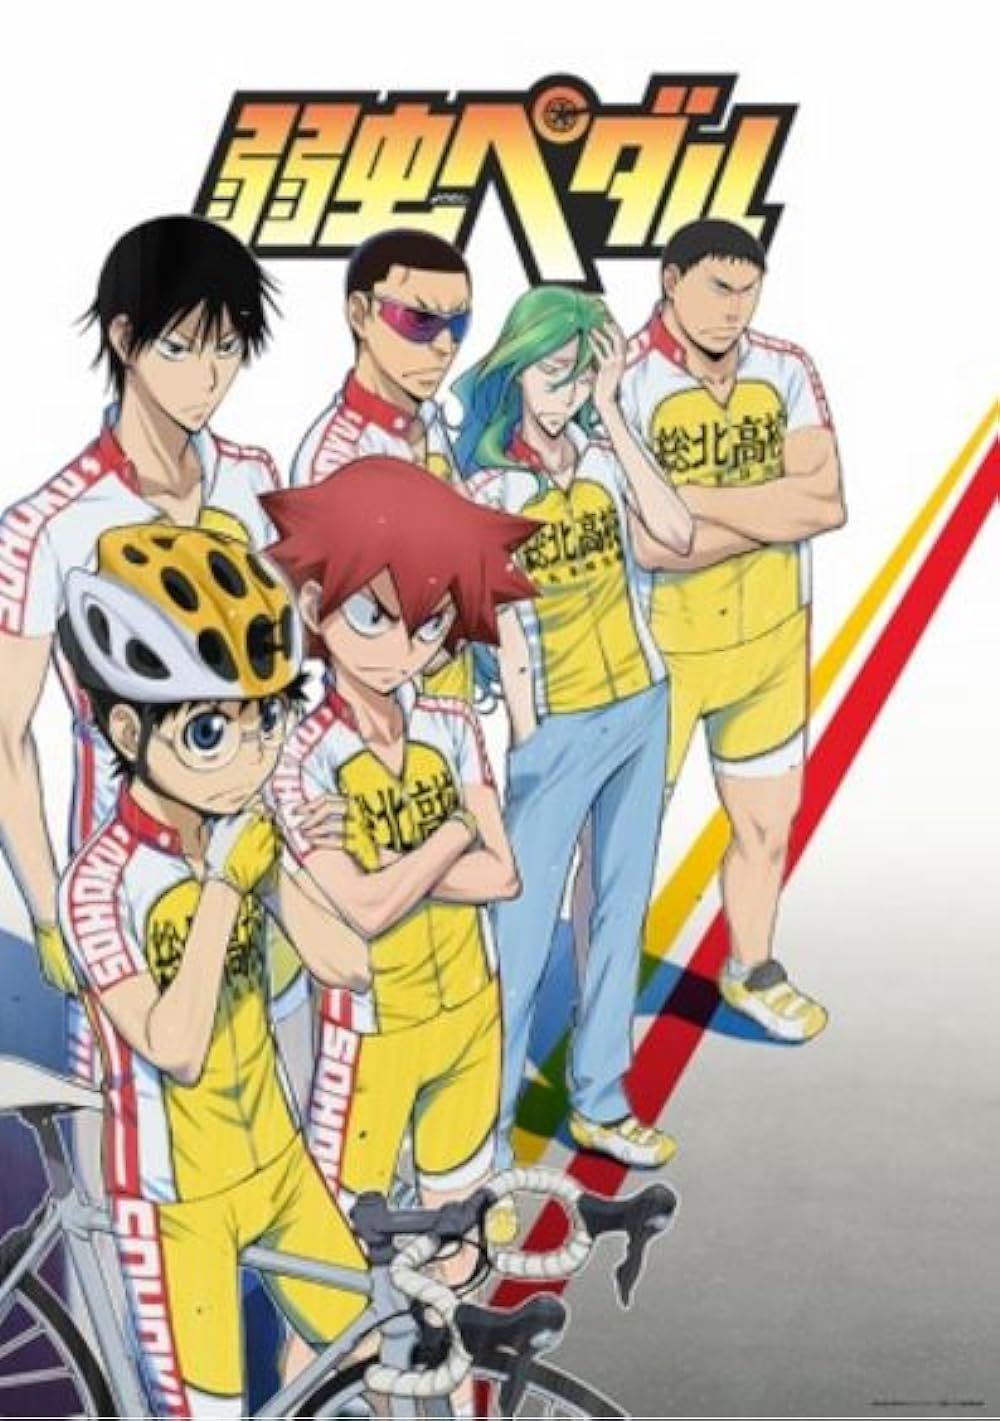 Yowamushi Pedal anime poster